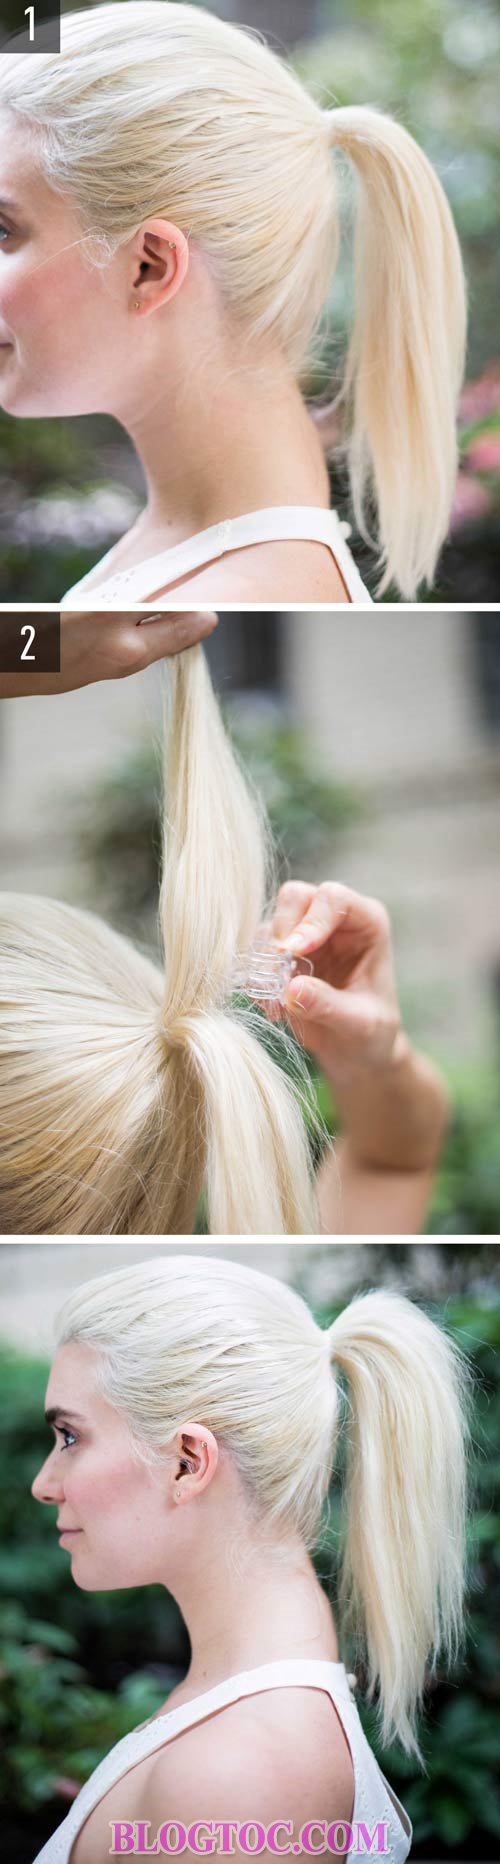 Những kiểu tóc đẹp đơn giản bạn có thể làm tại nhà chỉ với chút thời gian rảnh 11